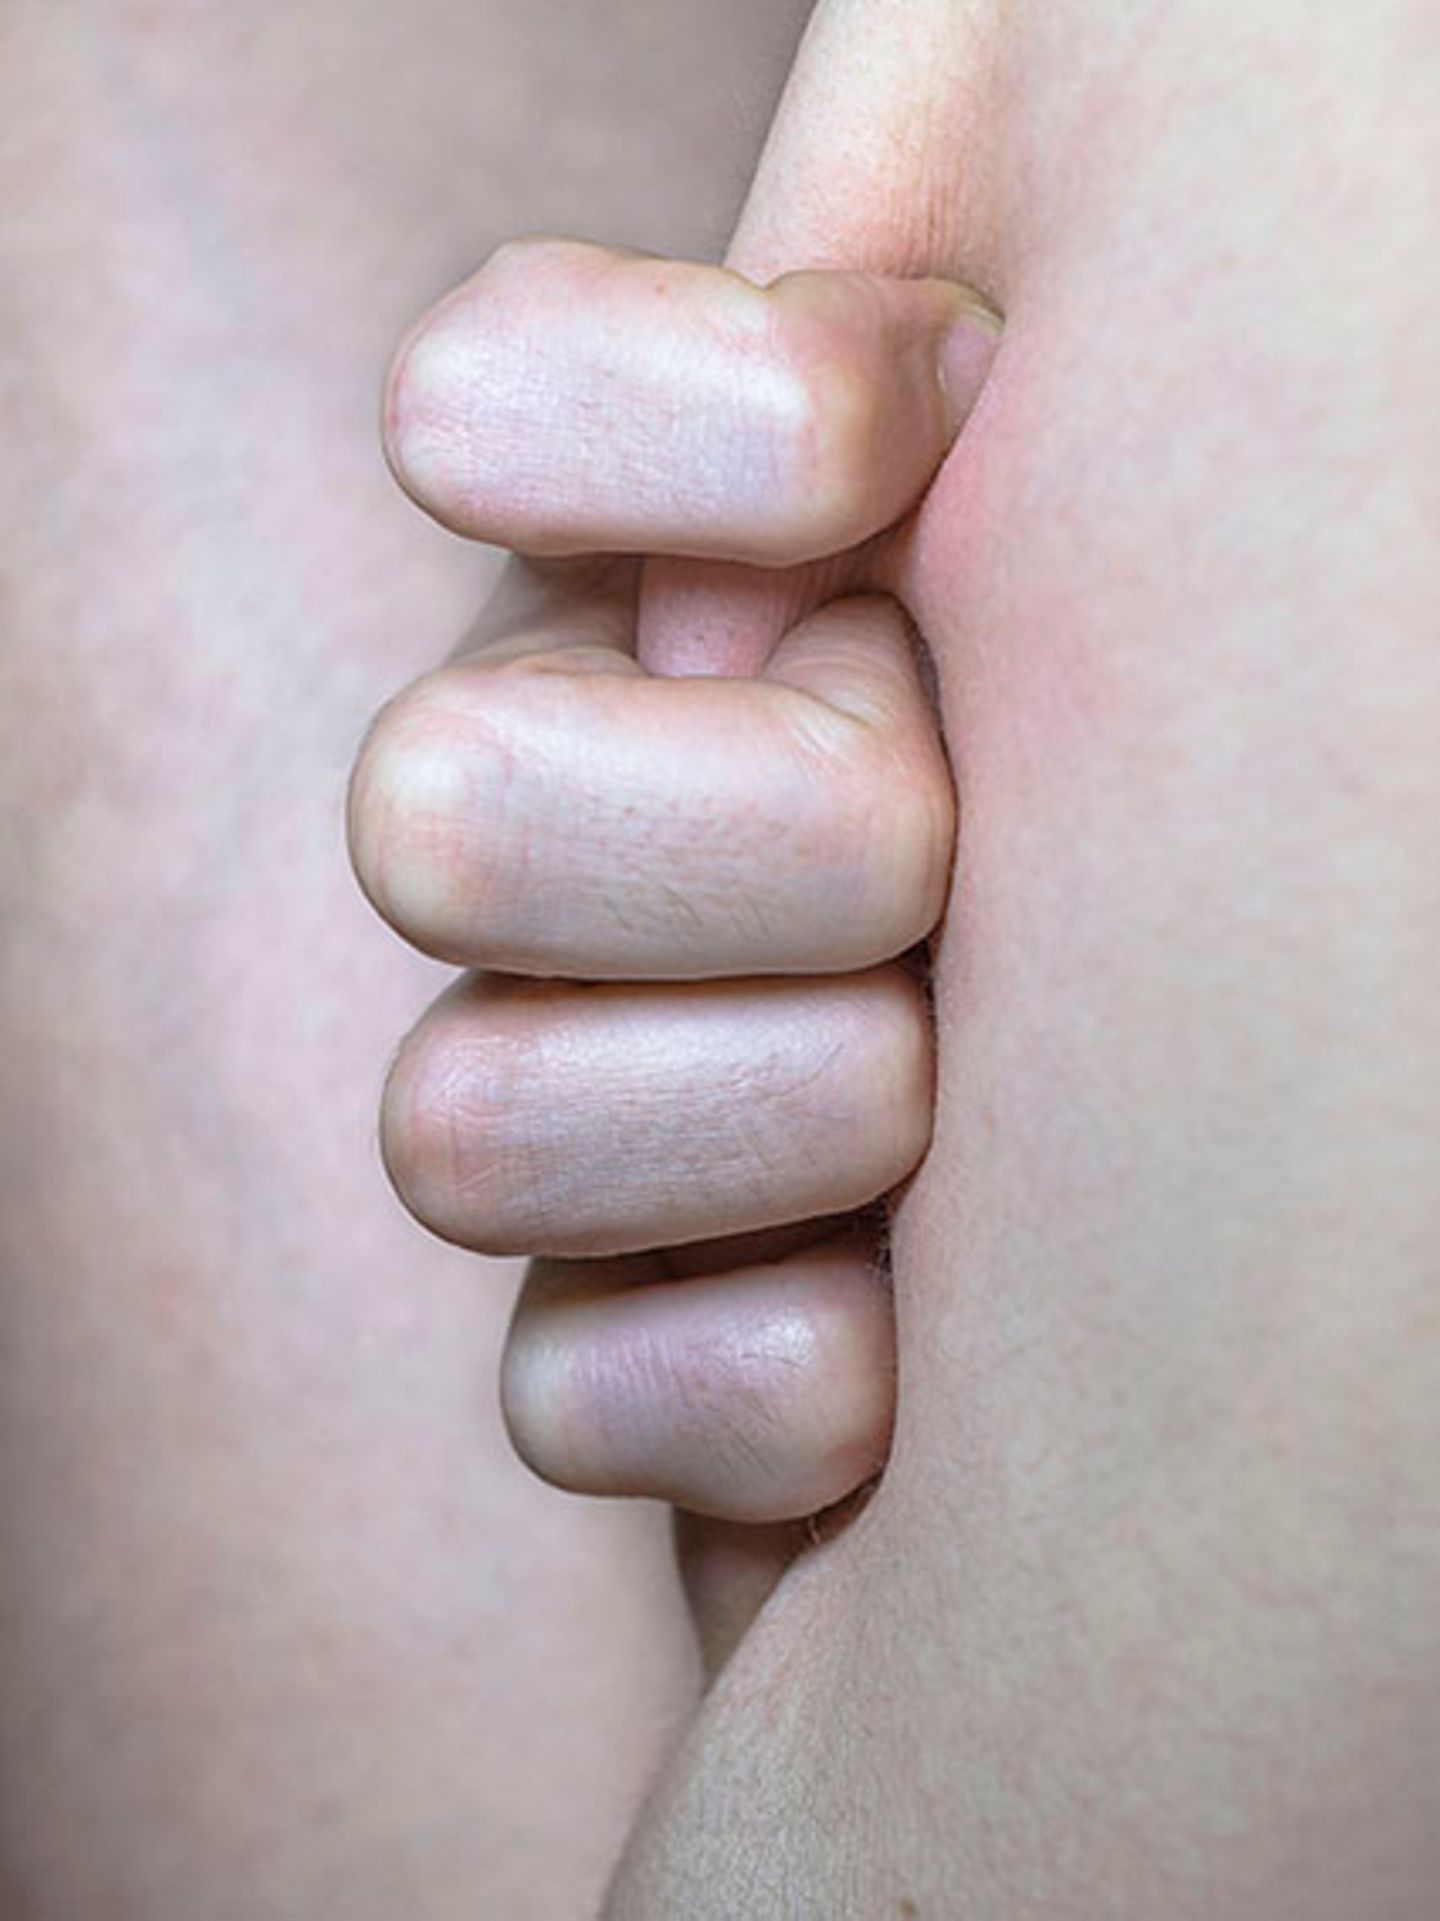 New Queer Photography: Hand drückt Haut